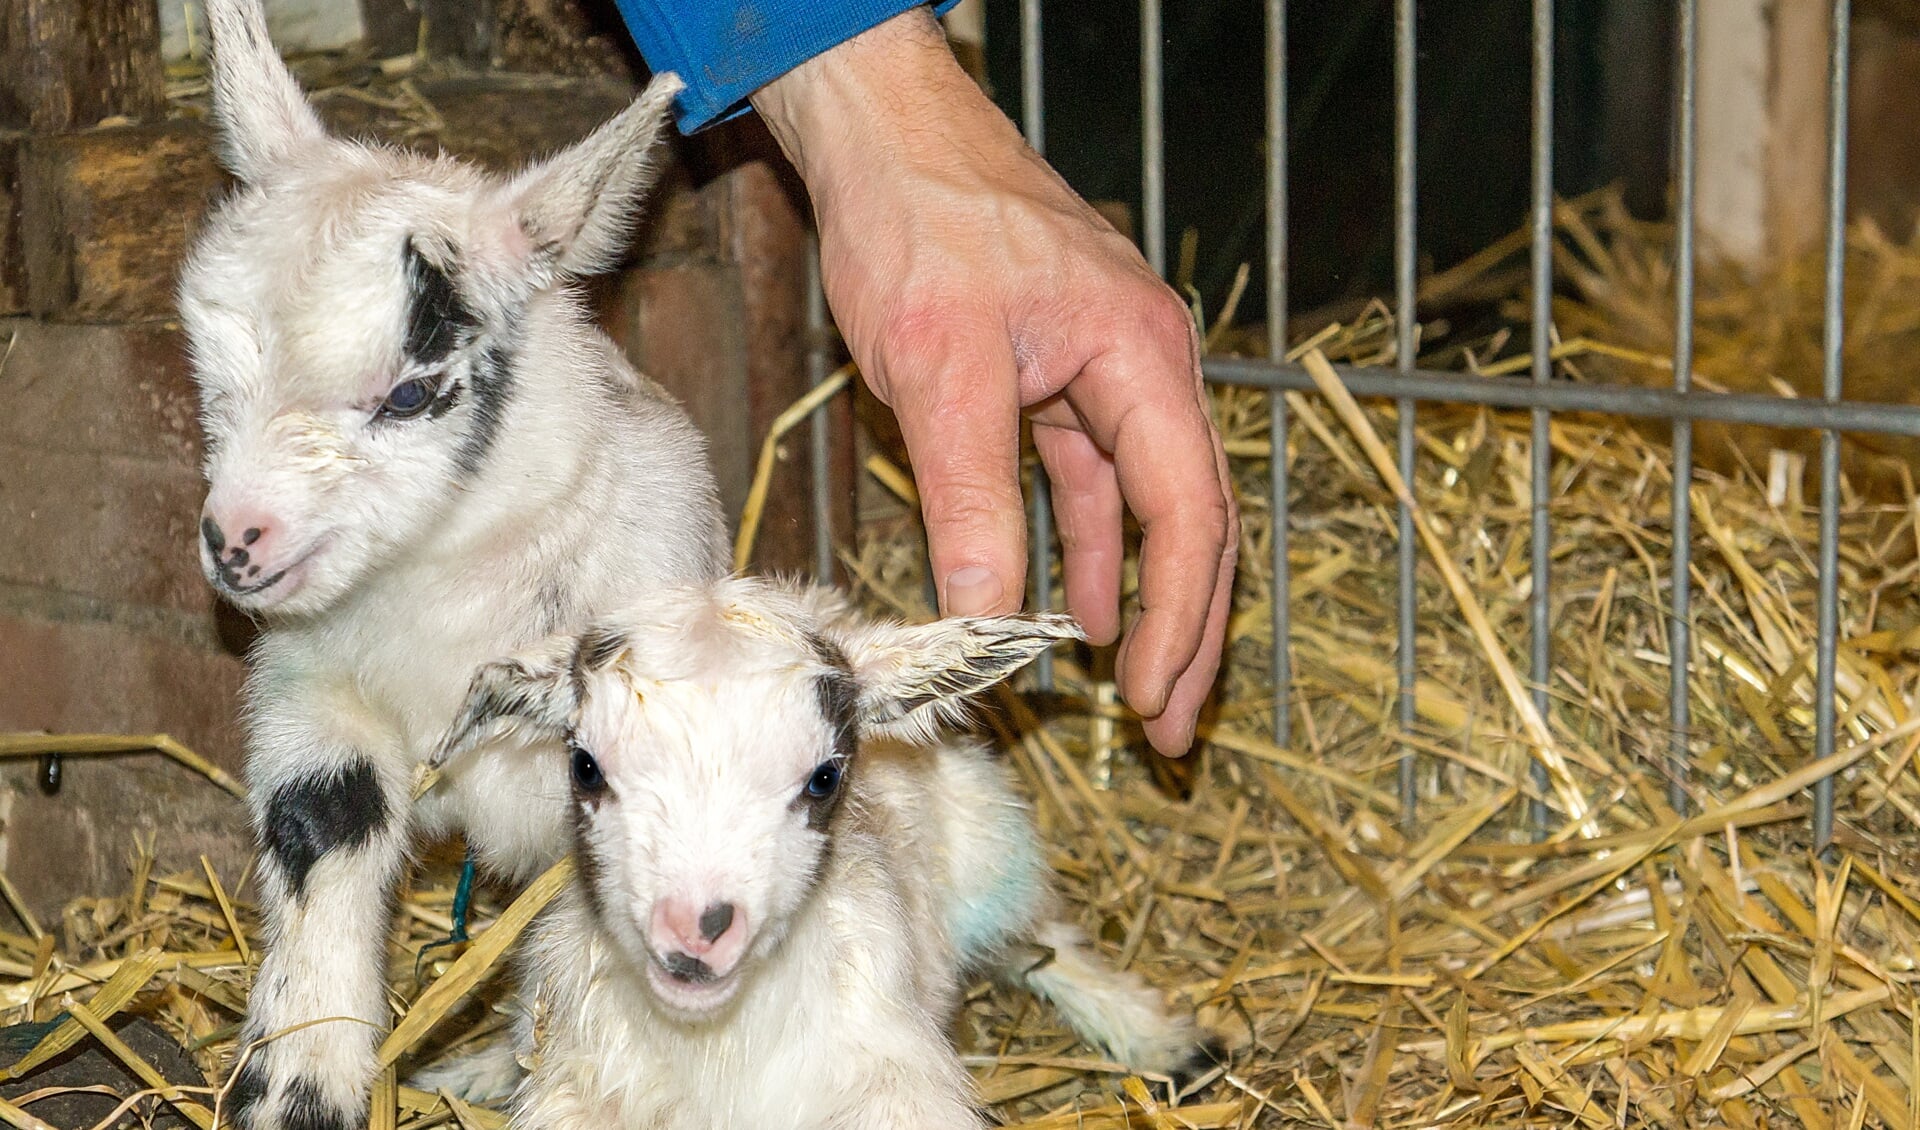 De pasgeboren geitjes in de stal van de kinderboerderij. De hand is van kinderboerderijbeheerder Bert van Eijk.